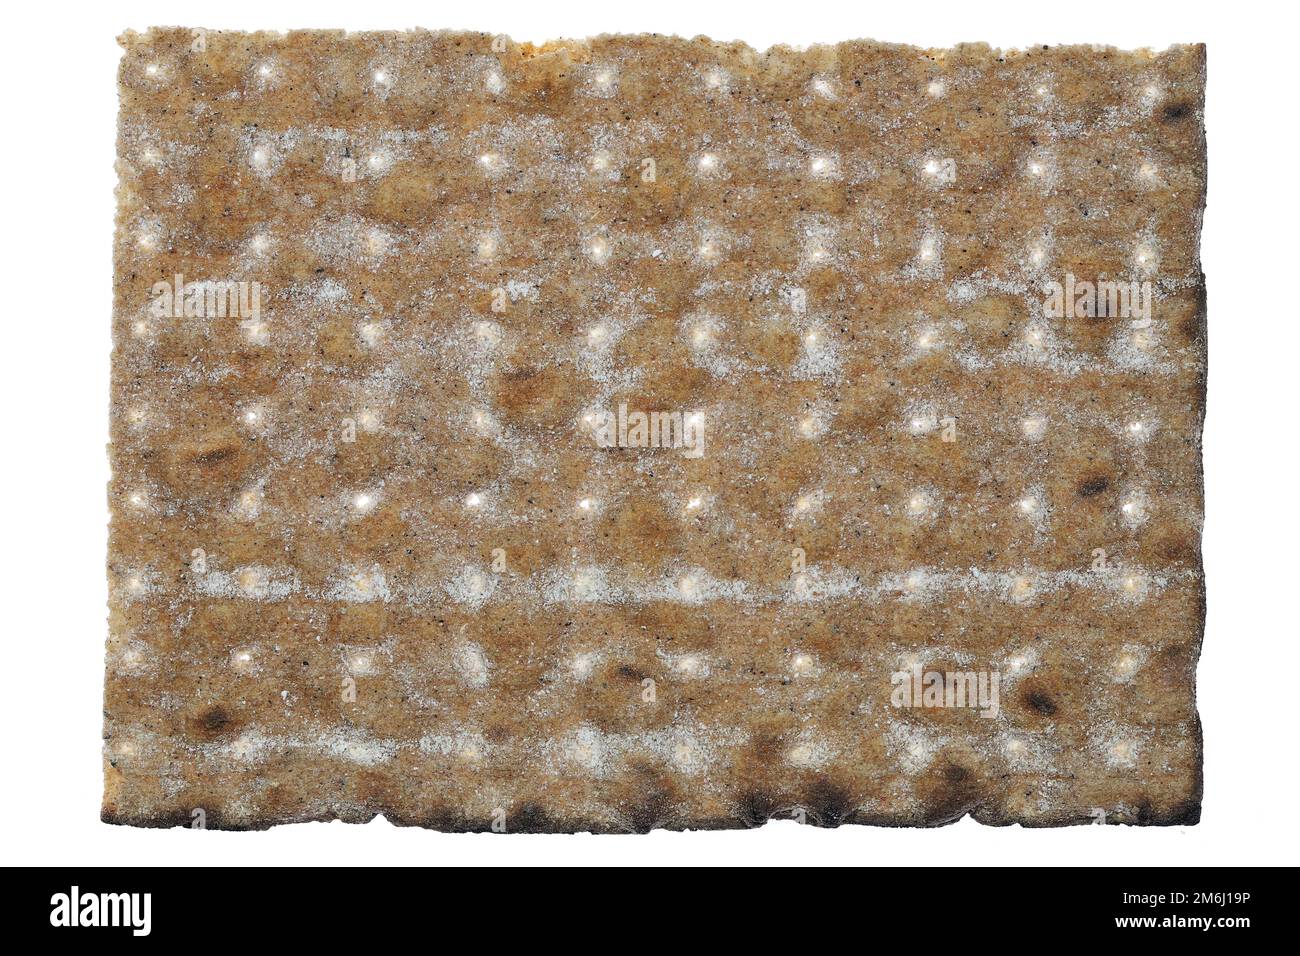 Swedish rye flatbread isolated on white background Stock Photo